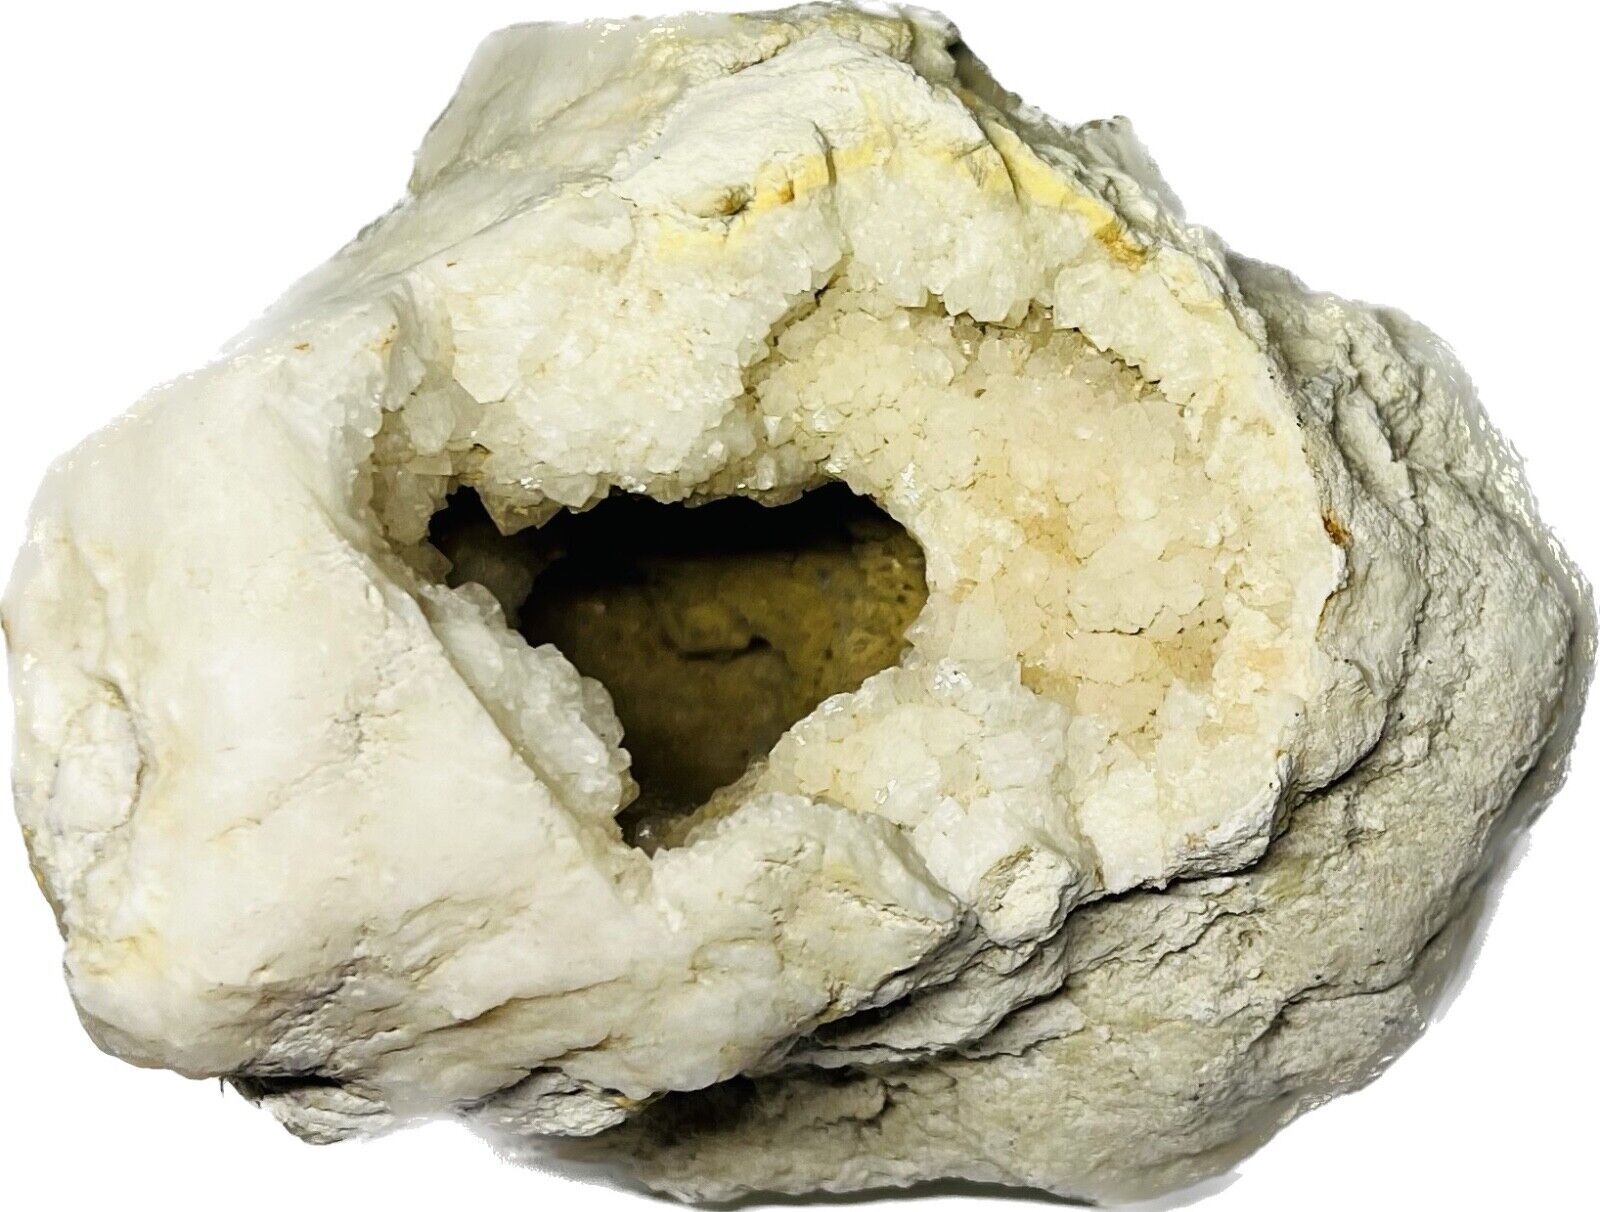 Natural Calcite Geode Crystal Mineral Specimen 3.12 Lb